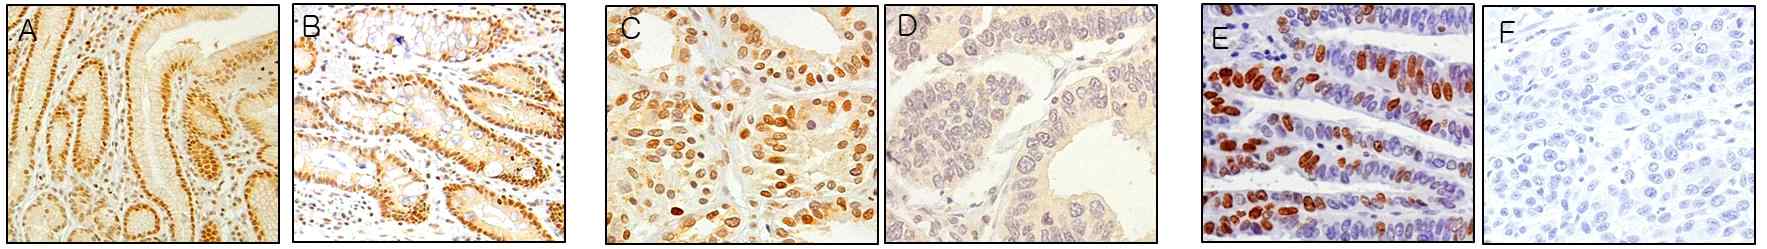 그림 18. Nuclear pSTAT3 was expressed in the proliferative zone in normal gastric mucosa (A) and in areas of intestinal metaplasia (X 200) (B). Gastric carcinoma cells showing nuclear pSTAT3 expression (X 400) (C). Gastric carcinoma cells without nuclear pSTAT3 expression (X 400) (D). Gastric carcinoma cells showing Ki-67 expression in the nucleus (X 400) (E). A negative control treated without primary antibodies (X 400) (F).